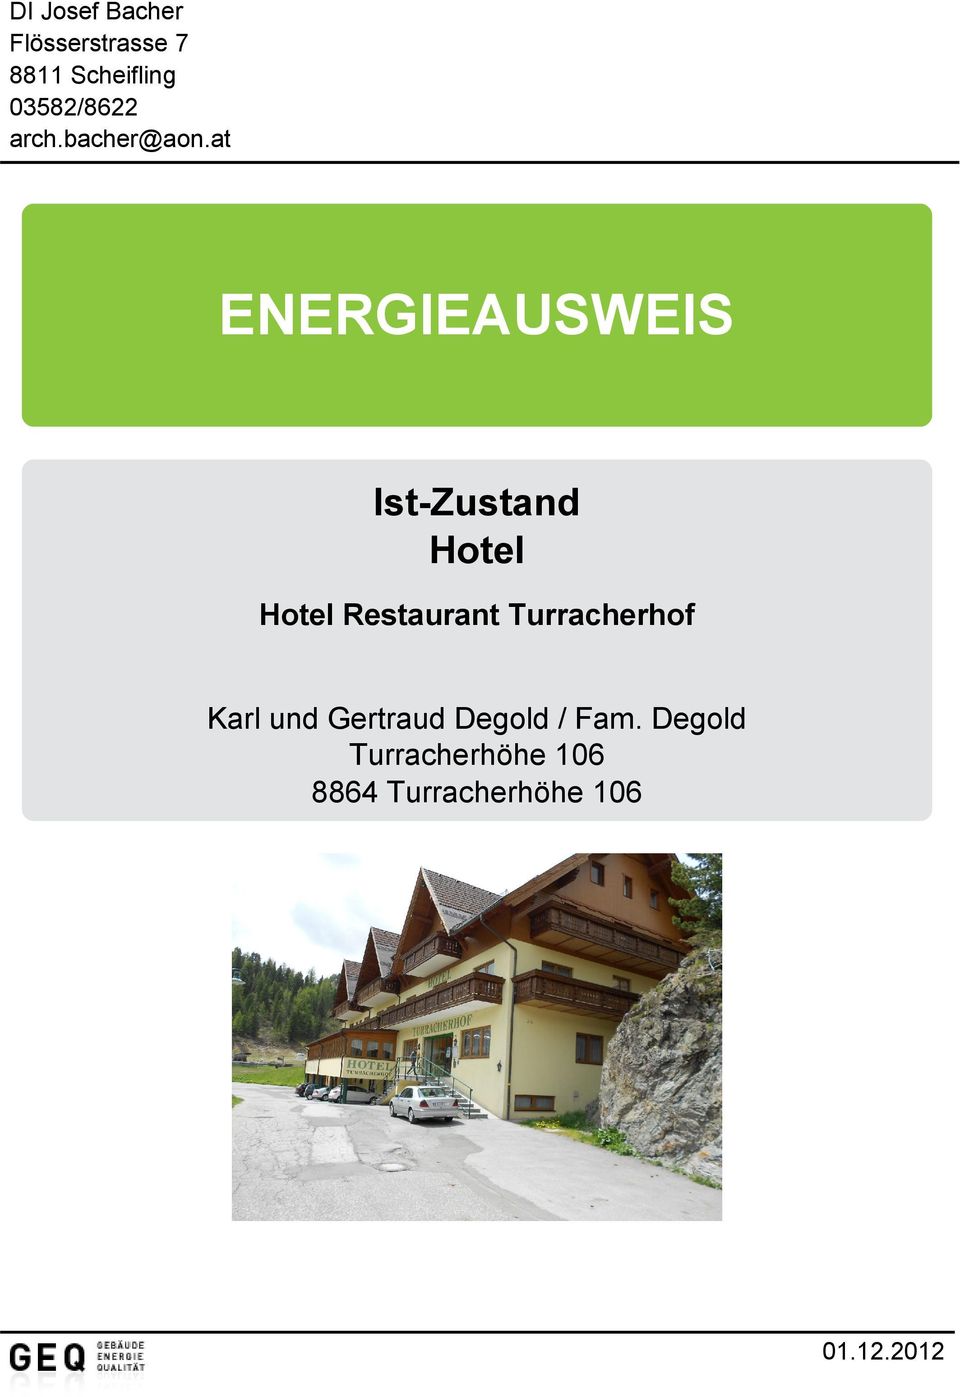 at ENERGEUSWES st-zustand Hotel Karl und Gertraud